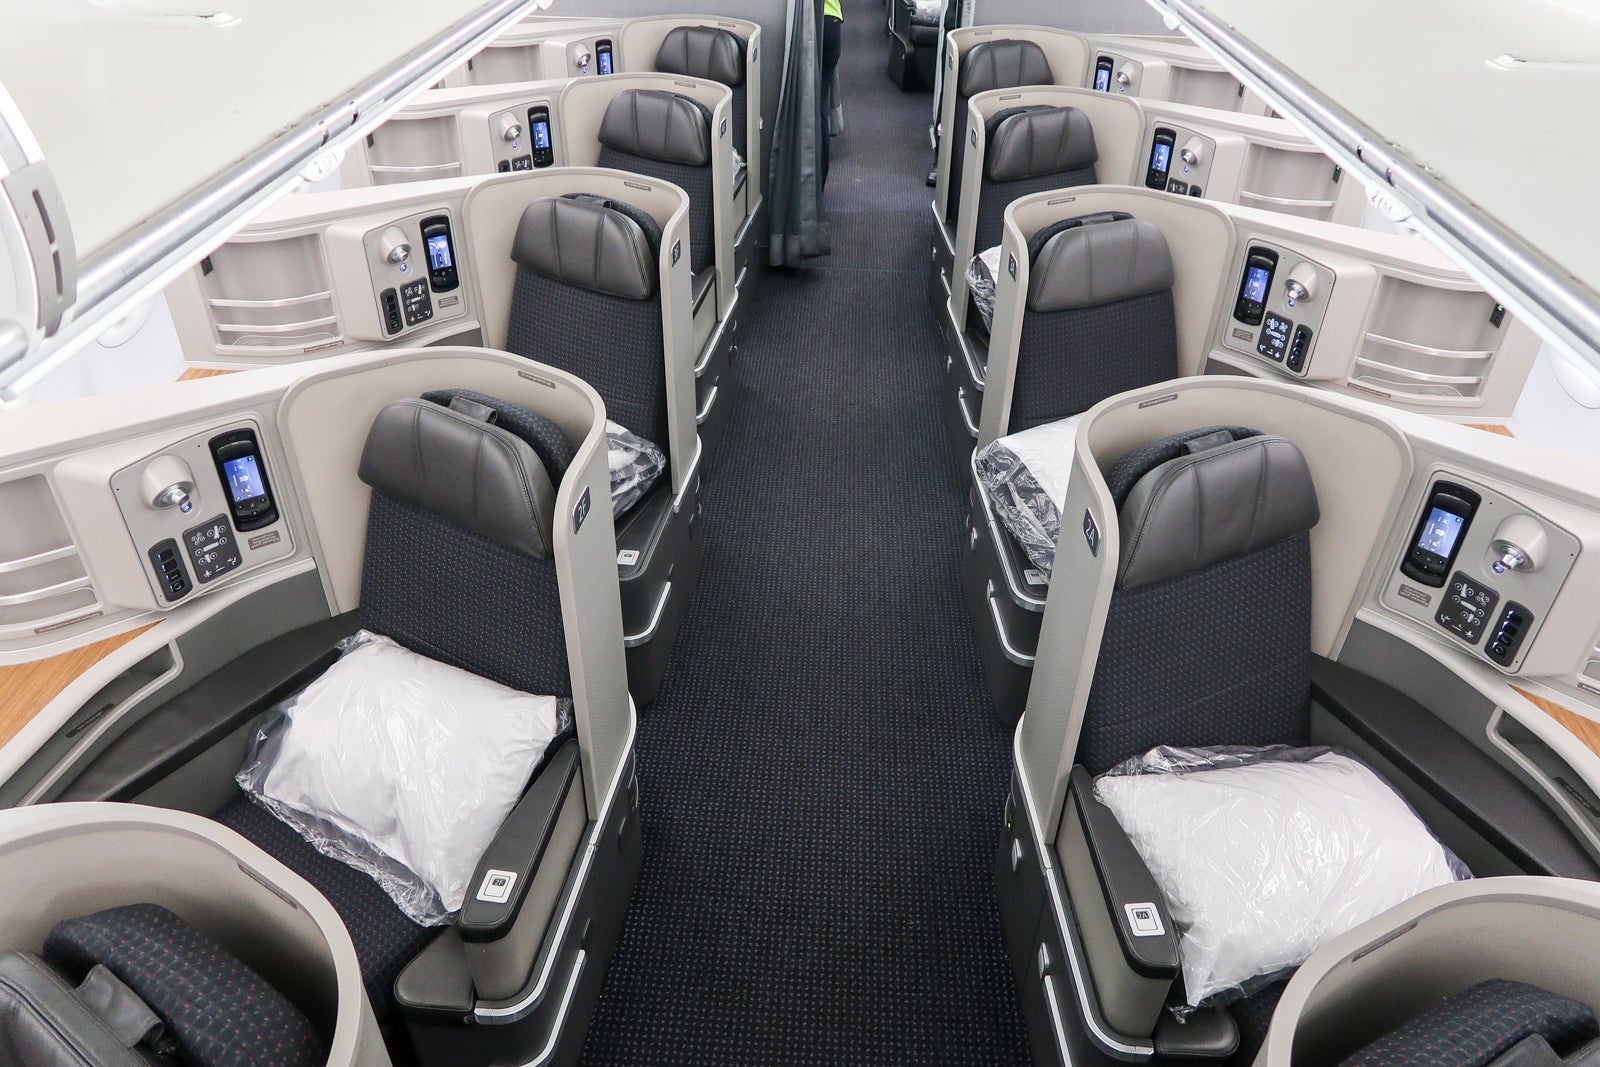 a first class cabin inside an airplane